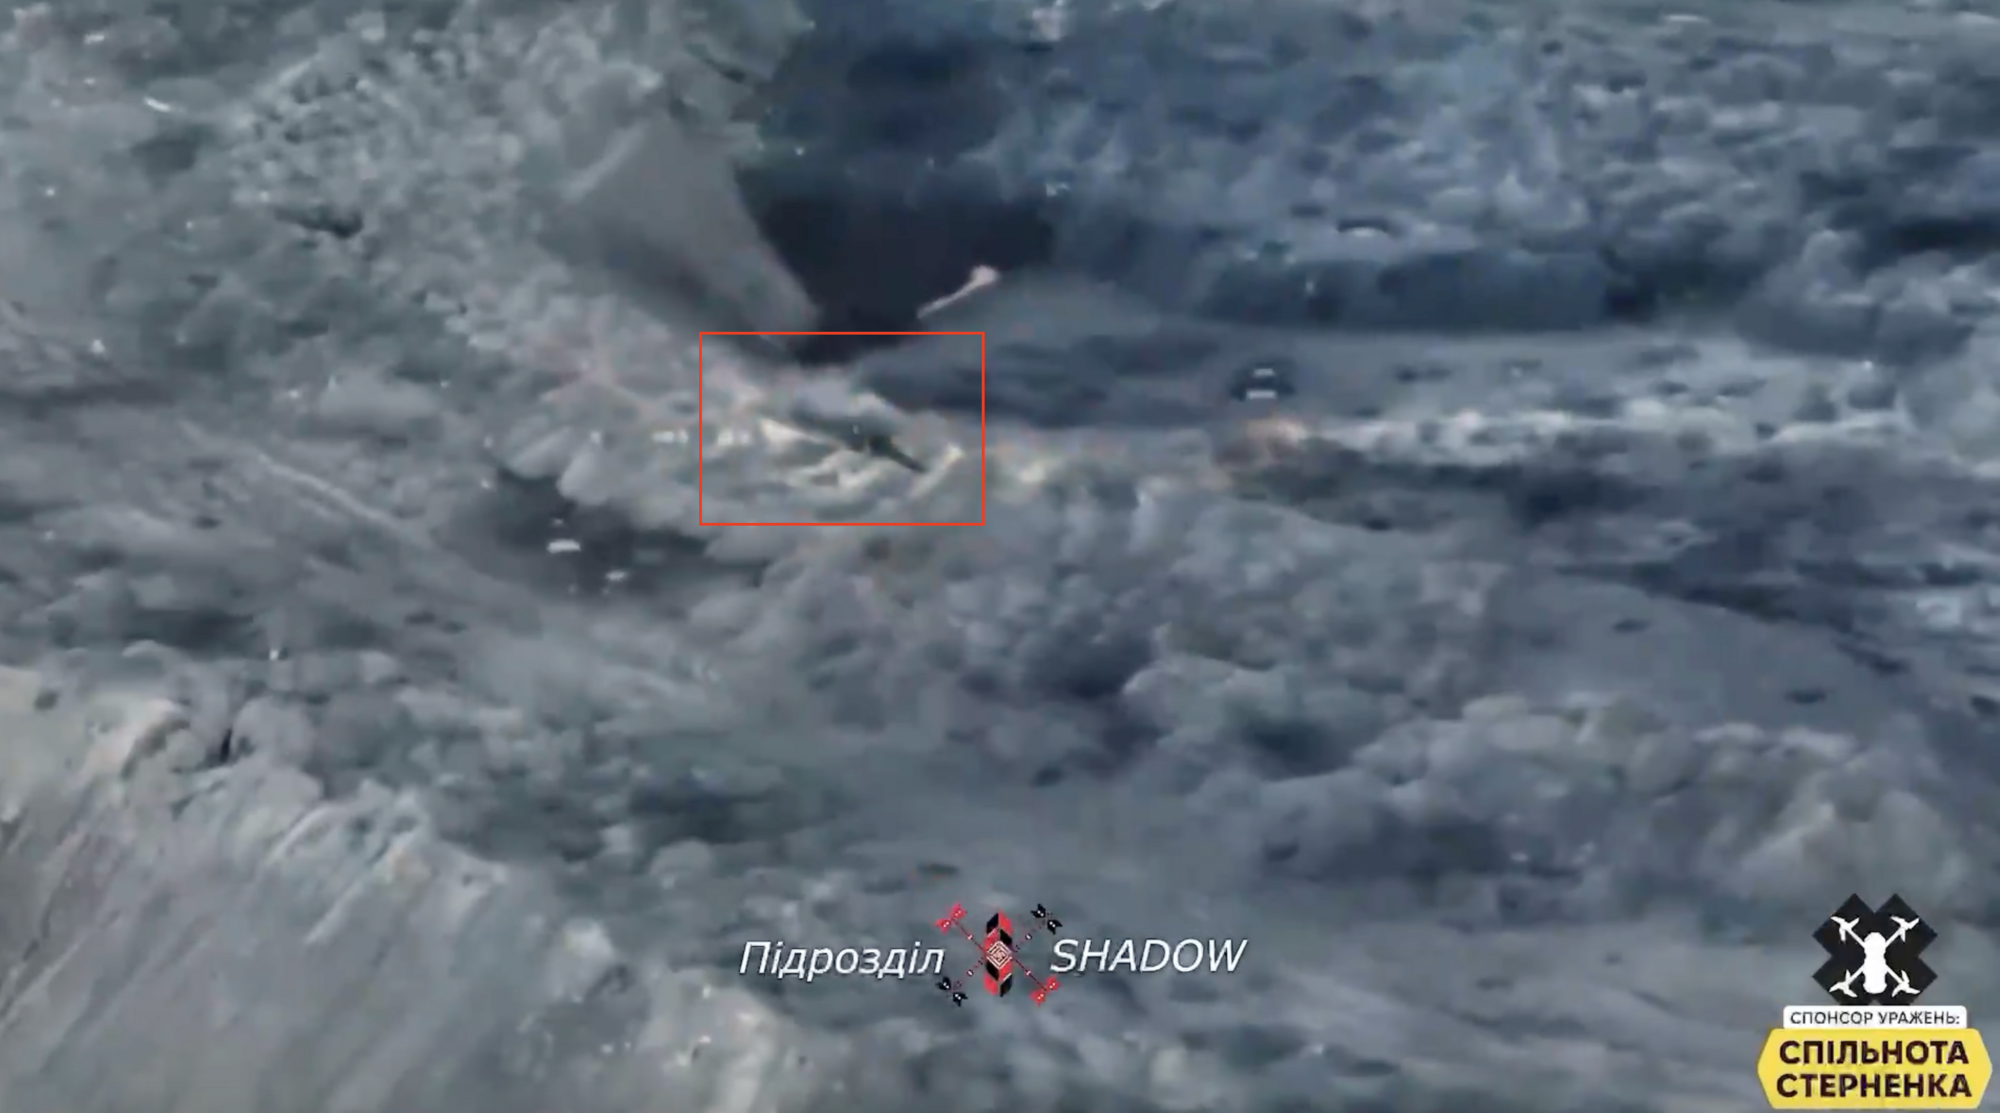 Провисели недолго: воины ВСУ дроном уничтожили российские флаги на Авдеевском терриконе. Видео